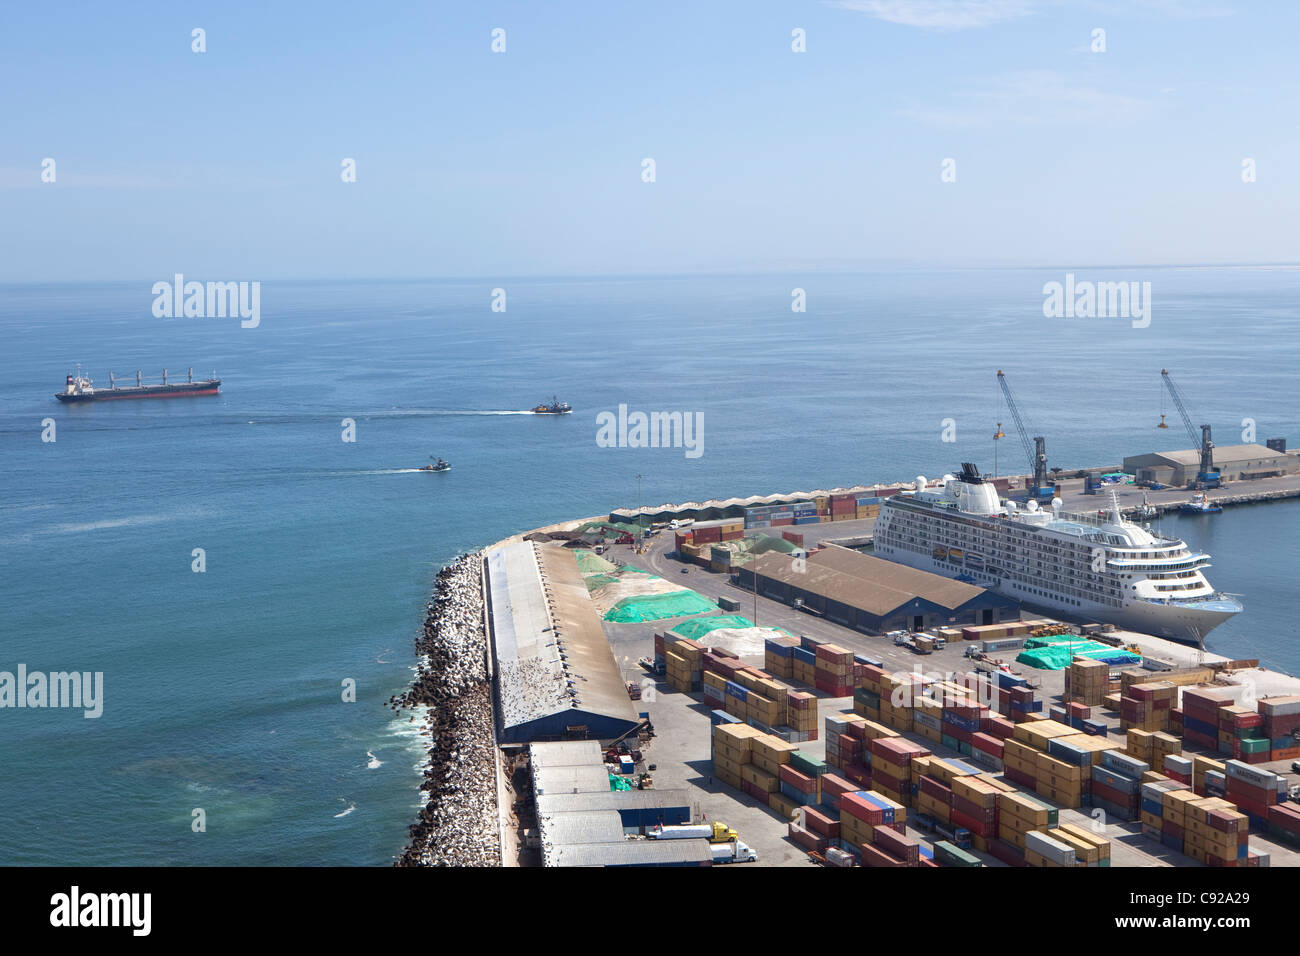 Chile, Arica, port seen from Morro de Arica Stock Photo